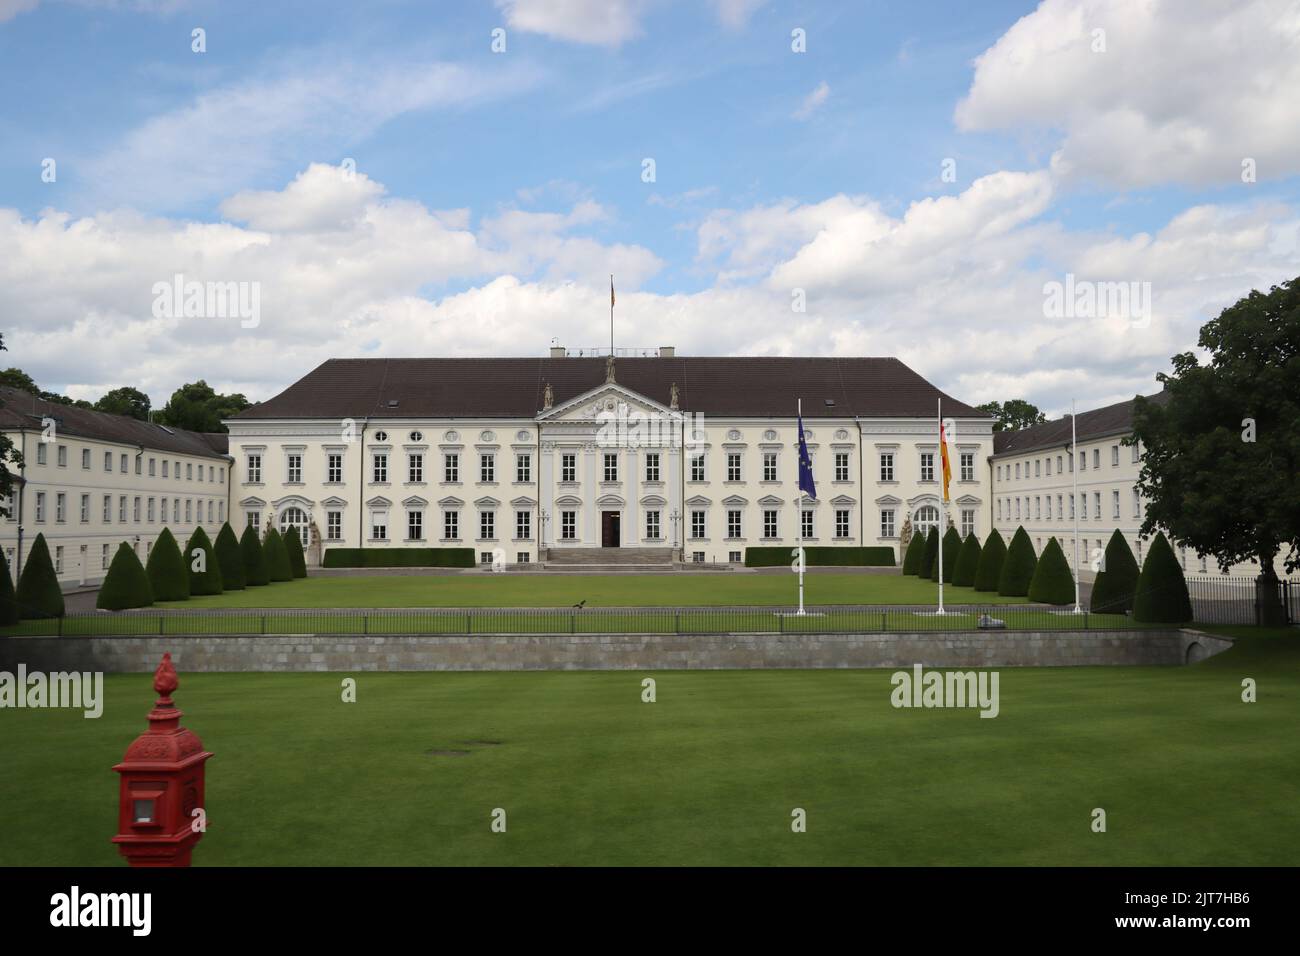 Schloss Bellevue, Amtssitz des deutschen Bundespräsidenten, Deutschland, Berlin Stock Photo